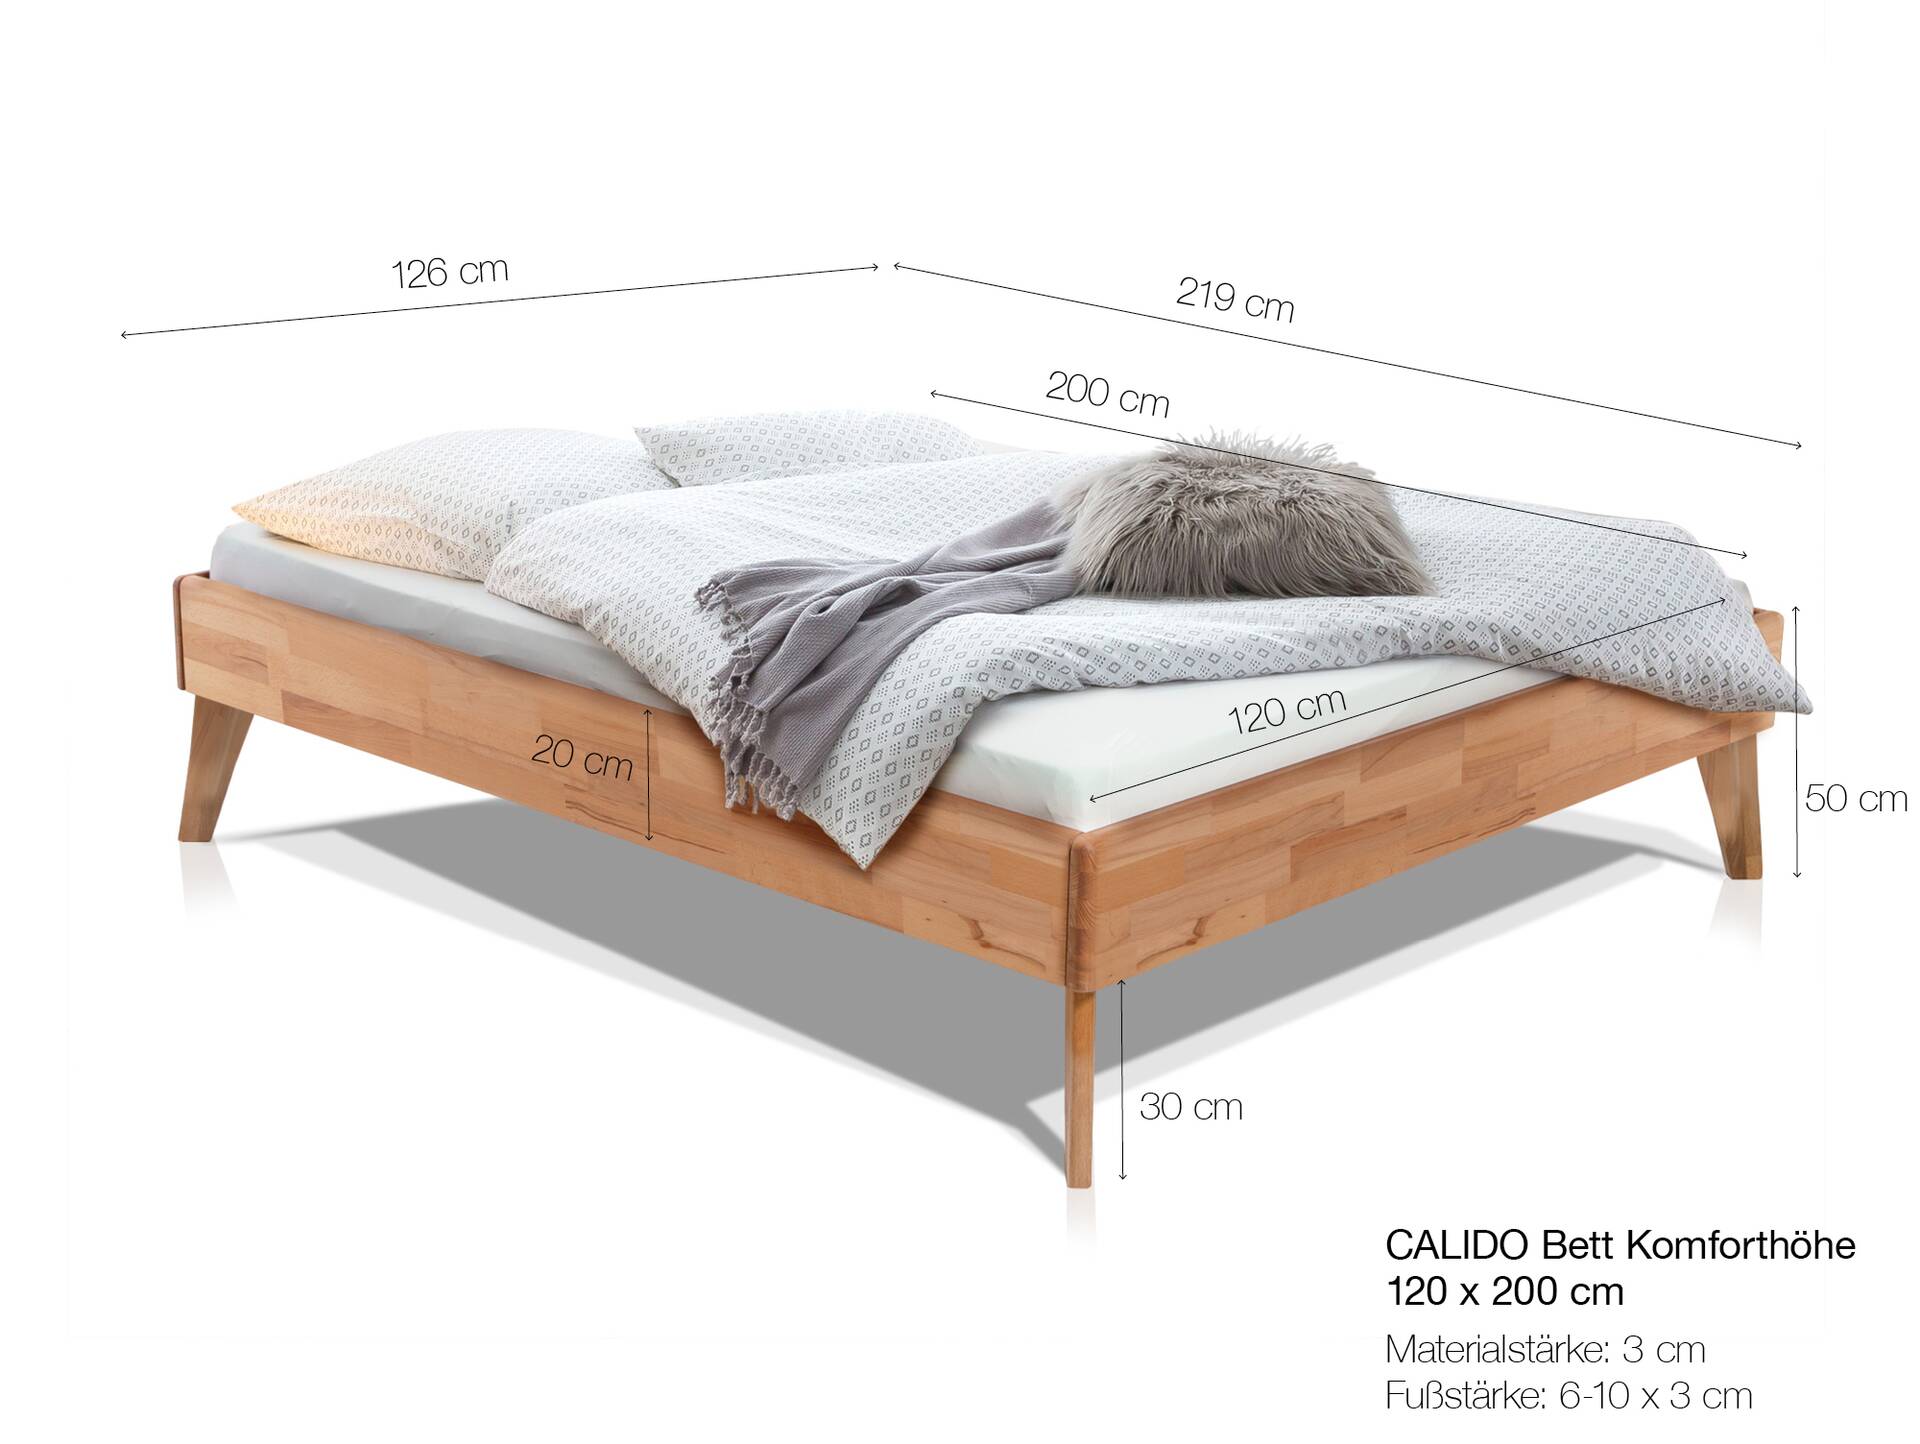 CALIDO 4-Fuß-Bett ohne Kopfteil, Material Massivholz 120 x 200 cm | Buche nussbaumfarbig gedämpft | Komforthöhe